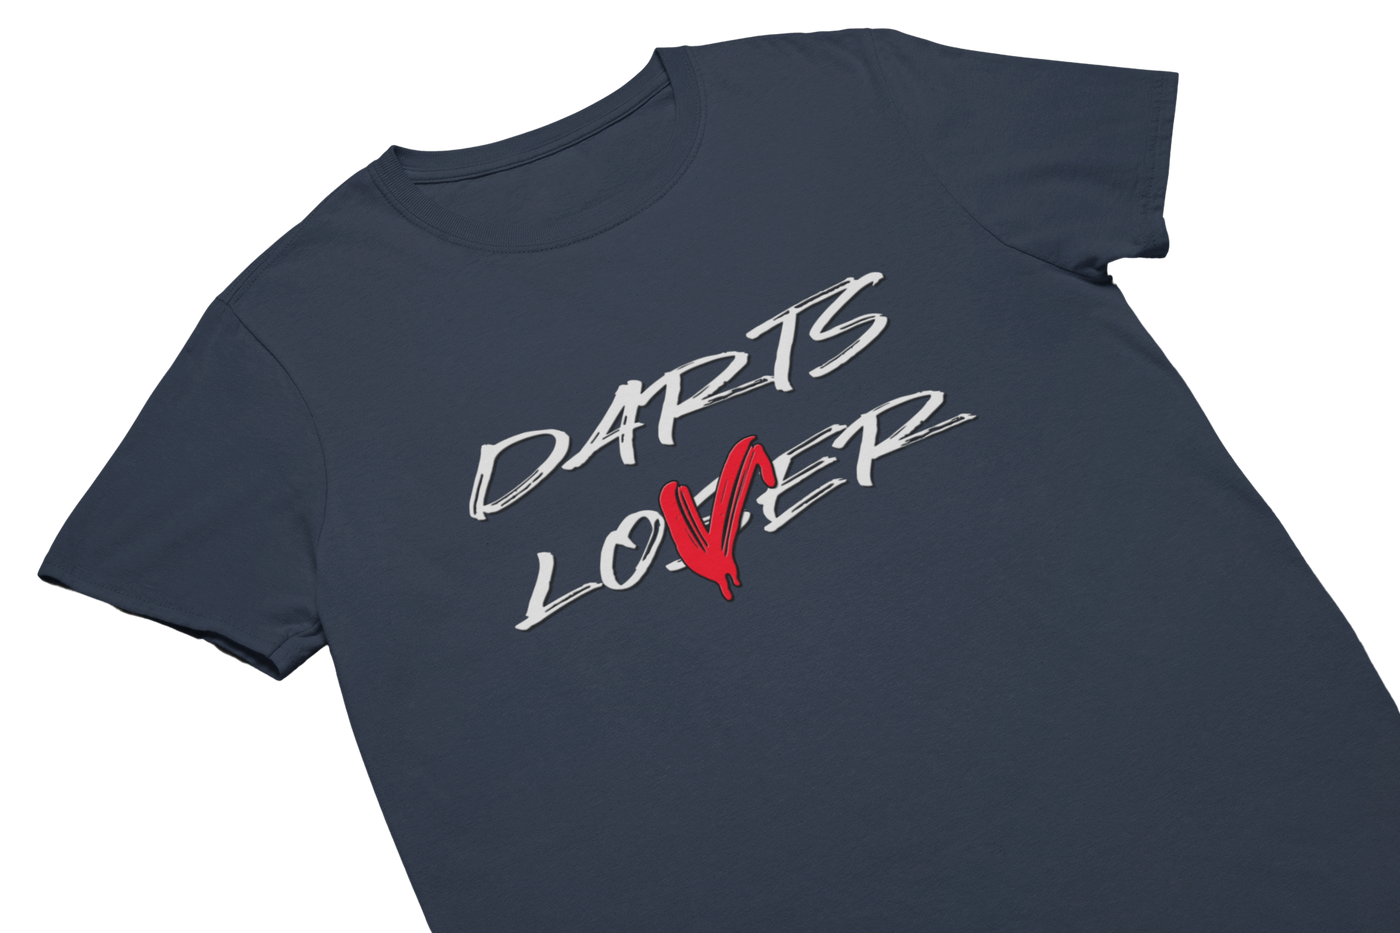 DARTS LOVER - T-Shirt Navy